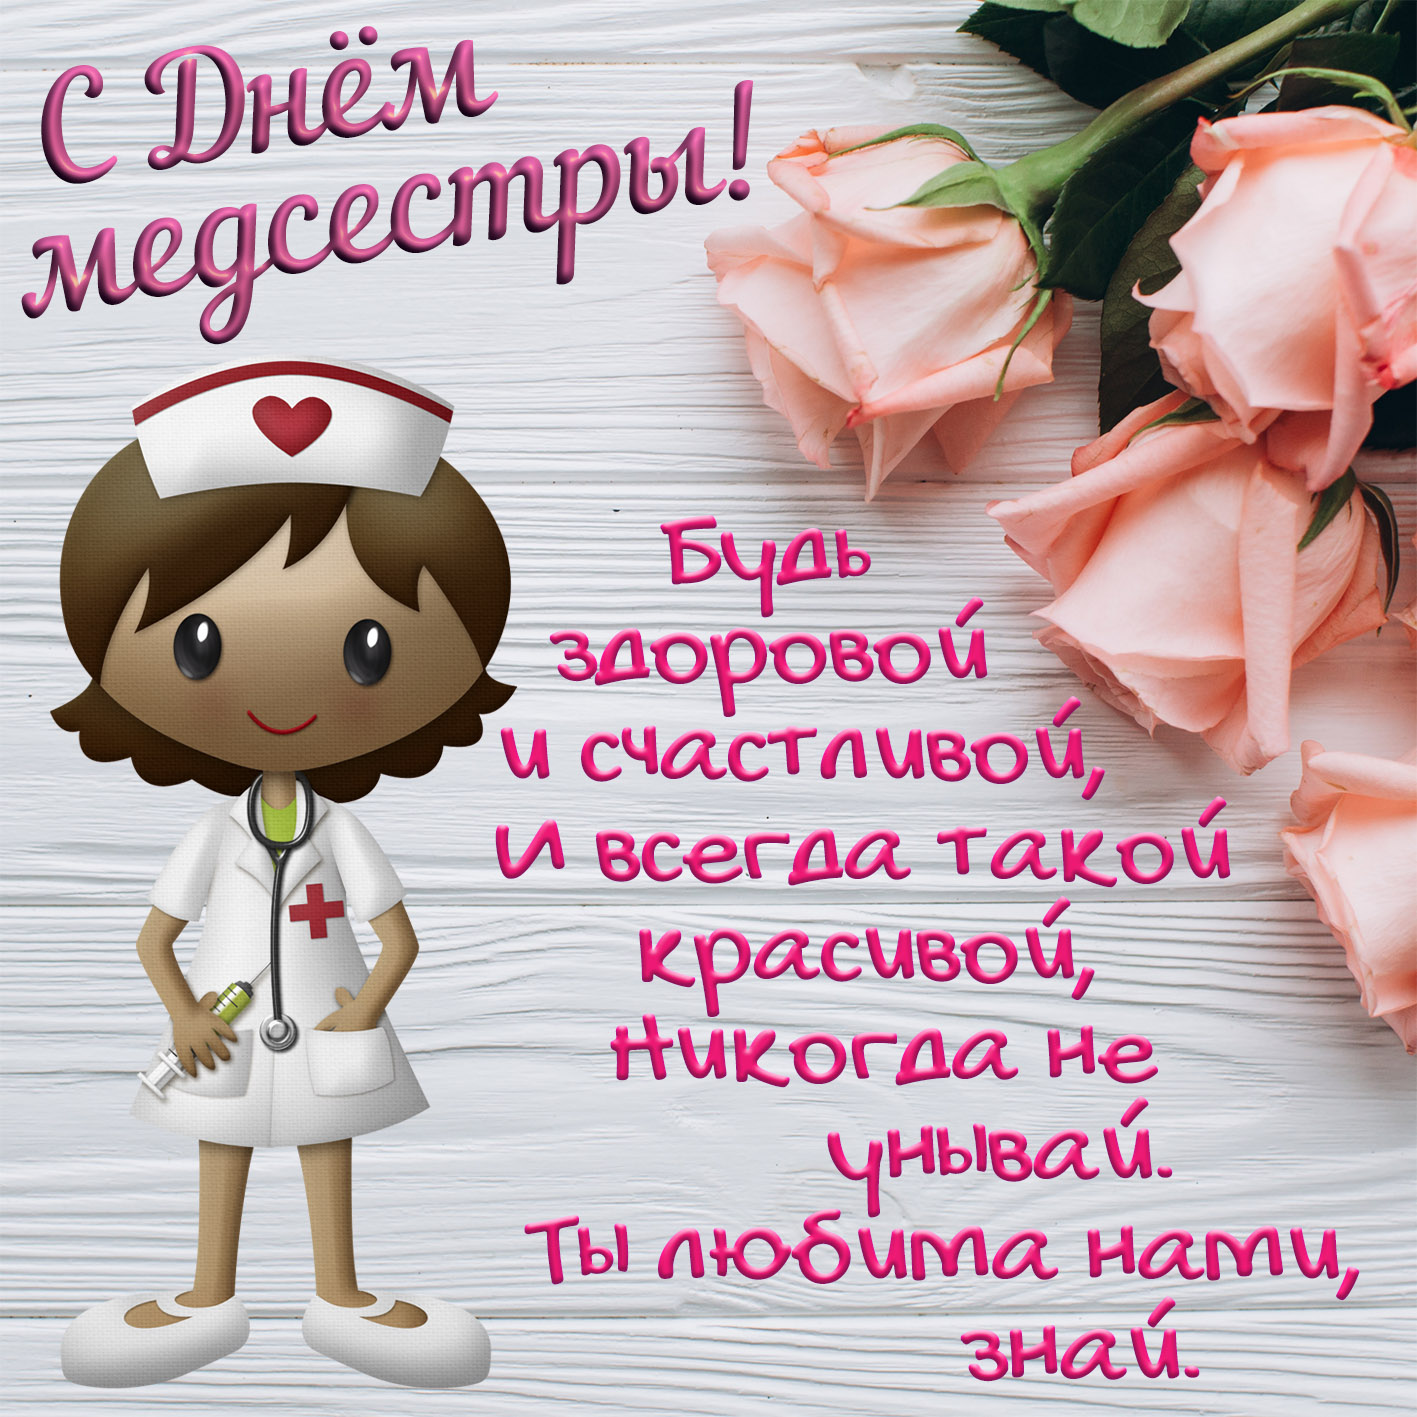 15 февраля день медсестры. С днём медицинской сестры поздравления. Поздравления с днём медсестры. Открытка с поздравлением медсестры. Поздрааления с днём медицинской сестры.